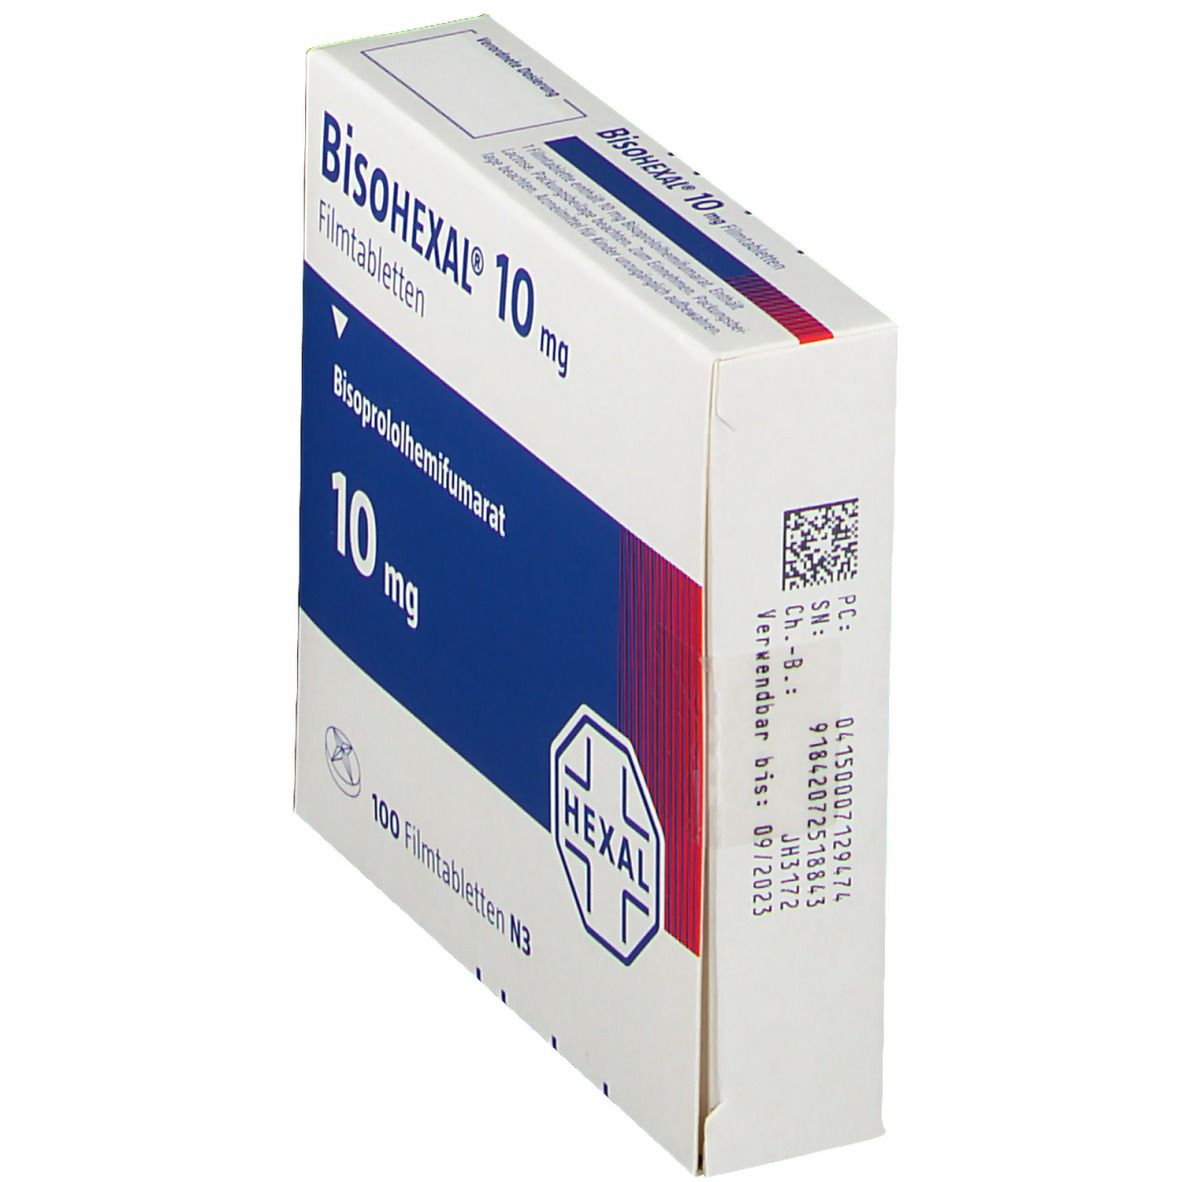 BisoHEXAL® 10 mg